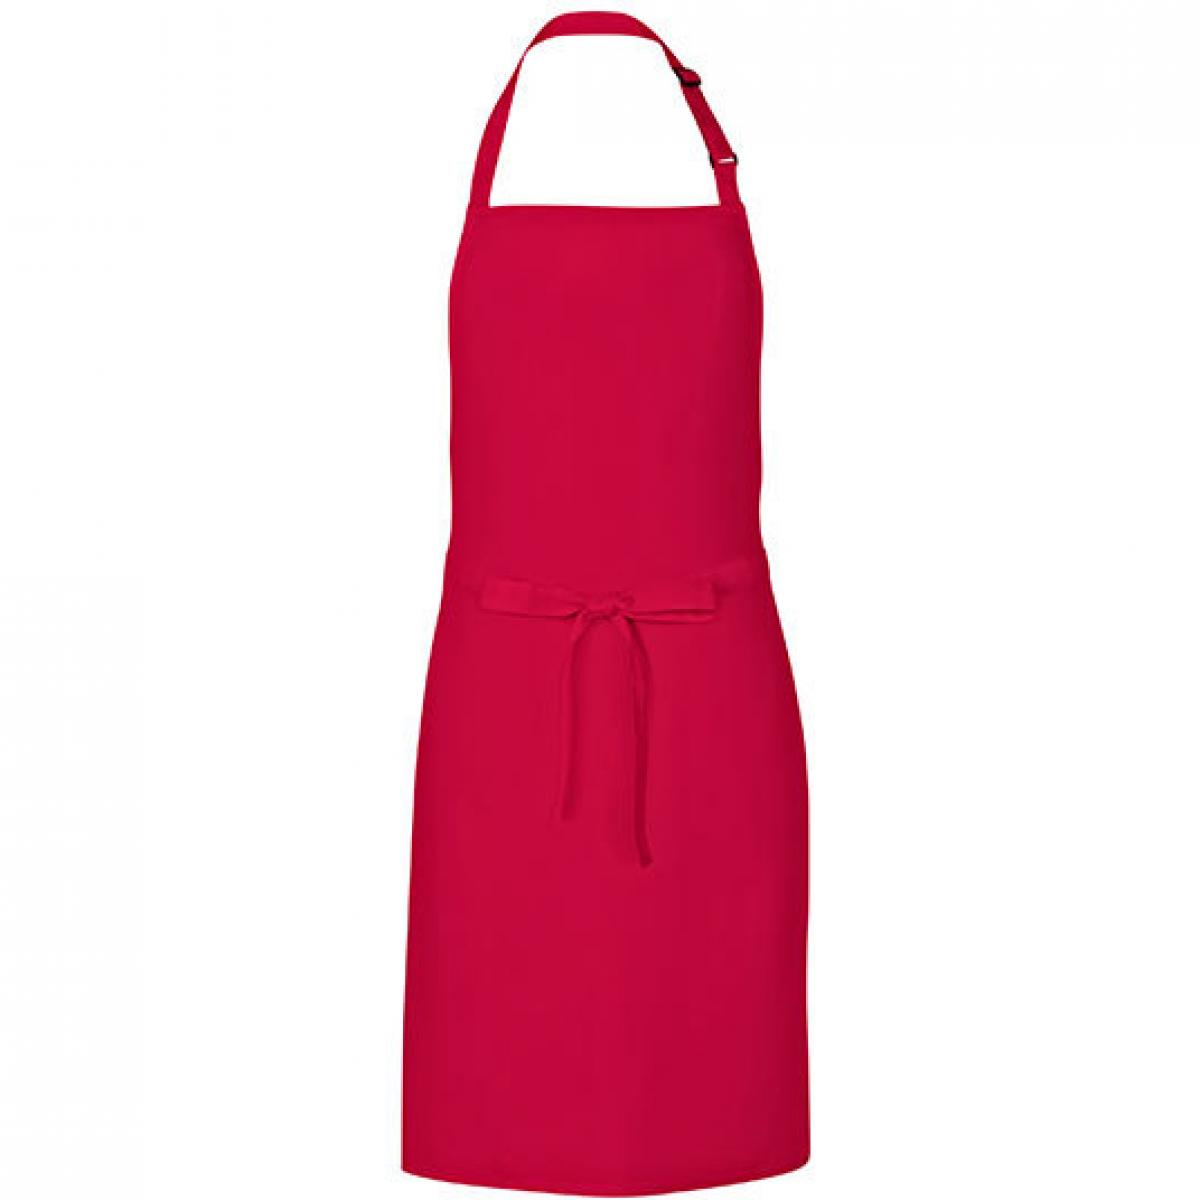 Hersteller: Link Kitchen Wear Herstellernummer: MS8572 Artikelbezeichnung: Multi Apron - 72 x 85 cm - Waschbar bis 60 °C Farbe: Red (ca. Pantone 200)